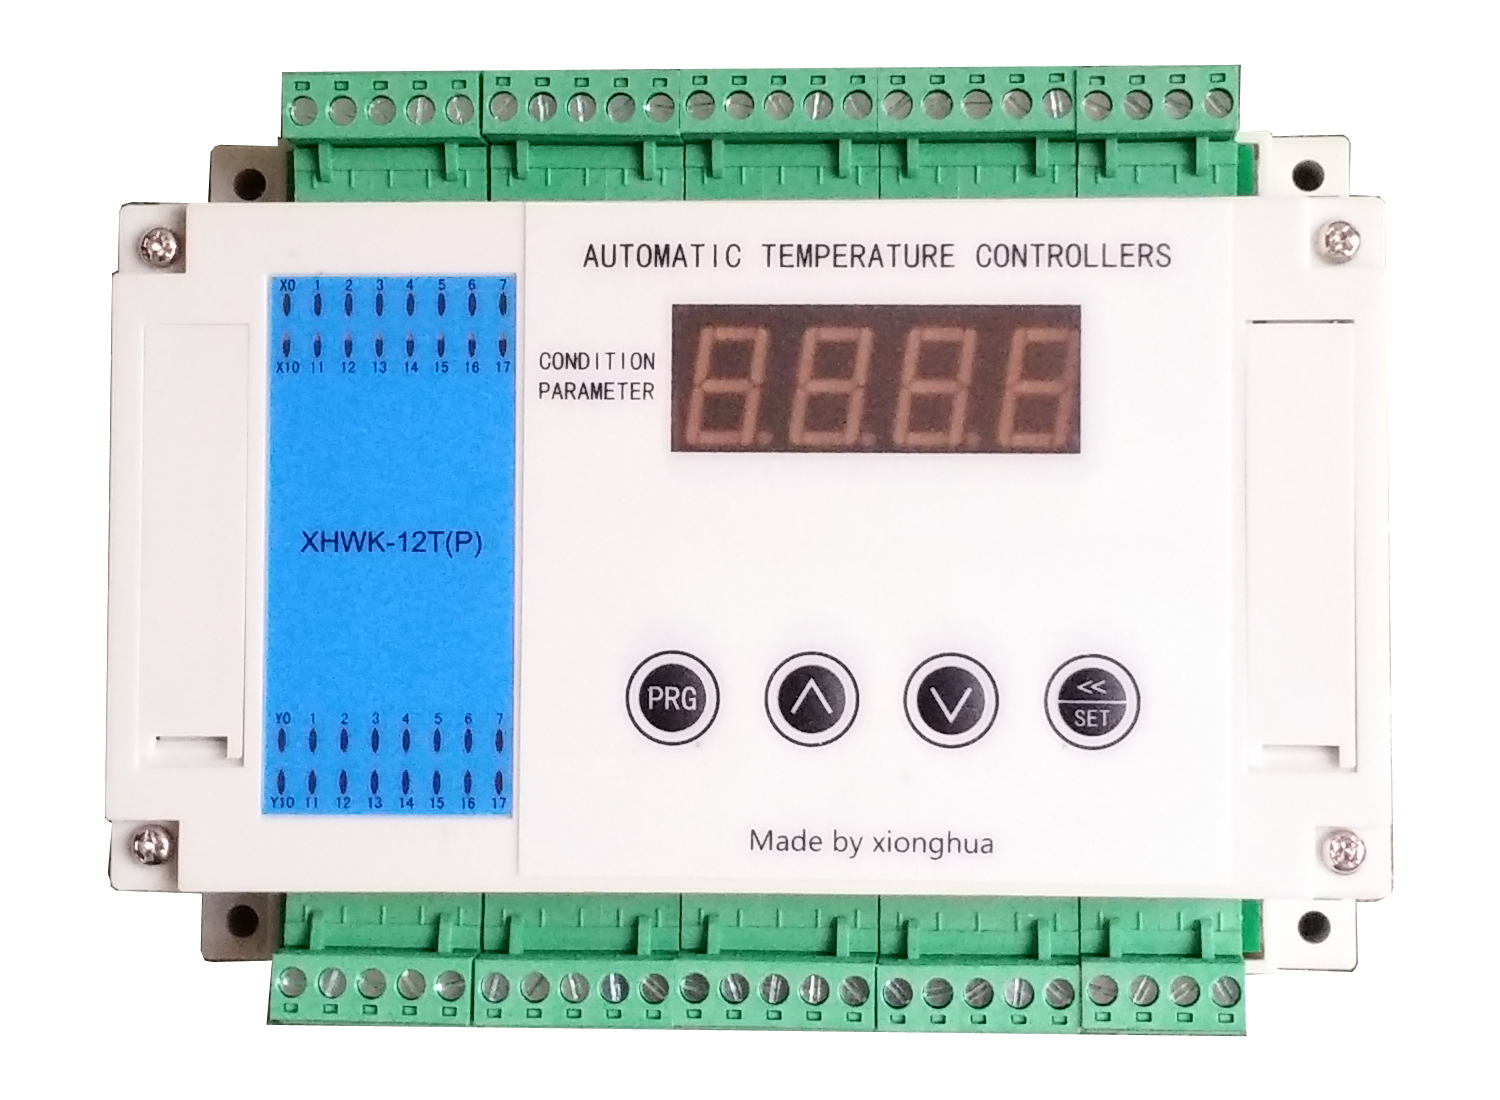 厂家直销触摸屏温度控制器 厂家不限地区直销触摸屏温度控制器